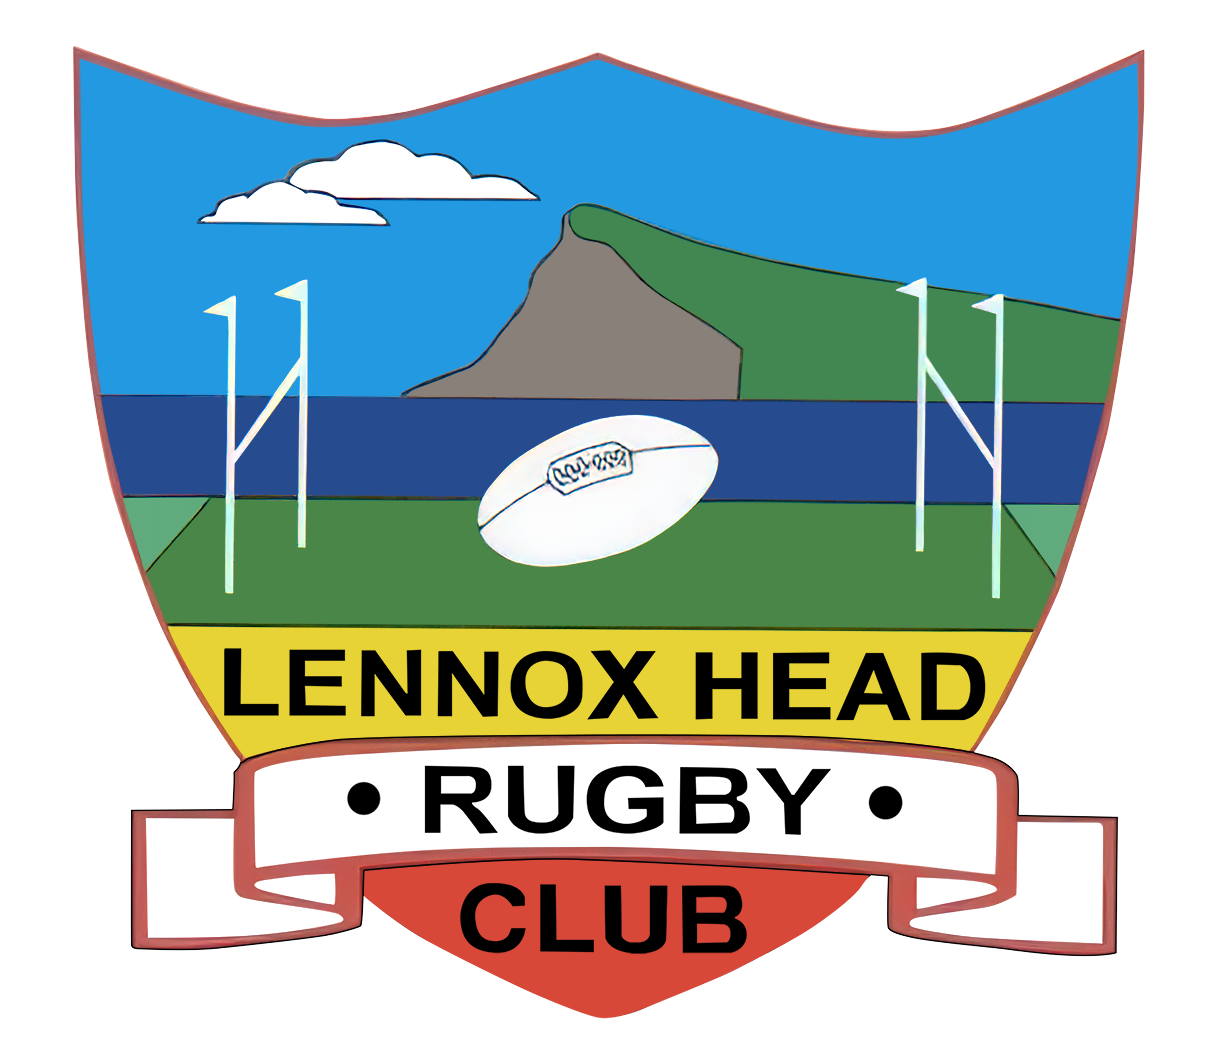 Lennox Head Rugby Union Club